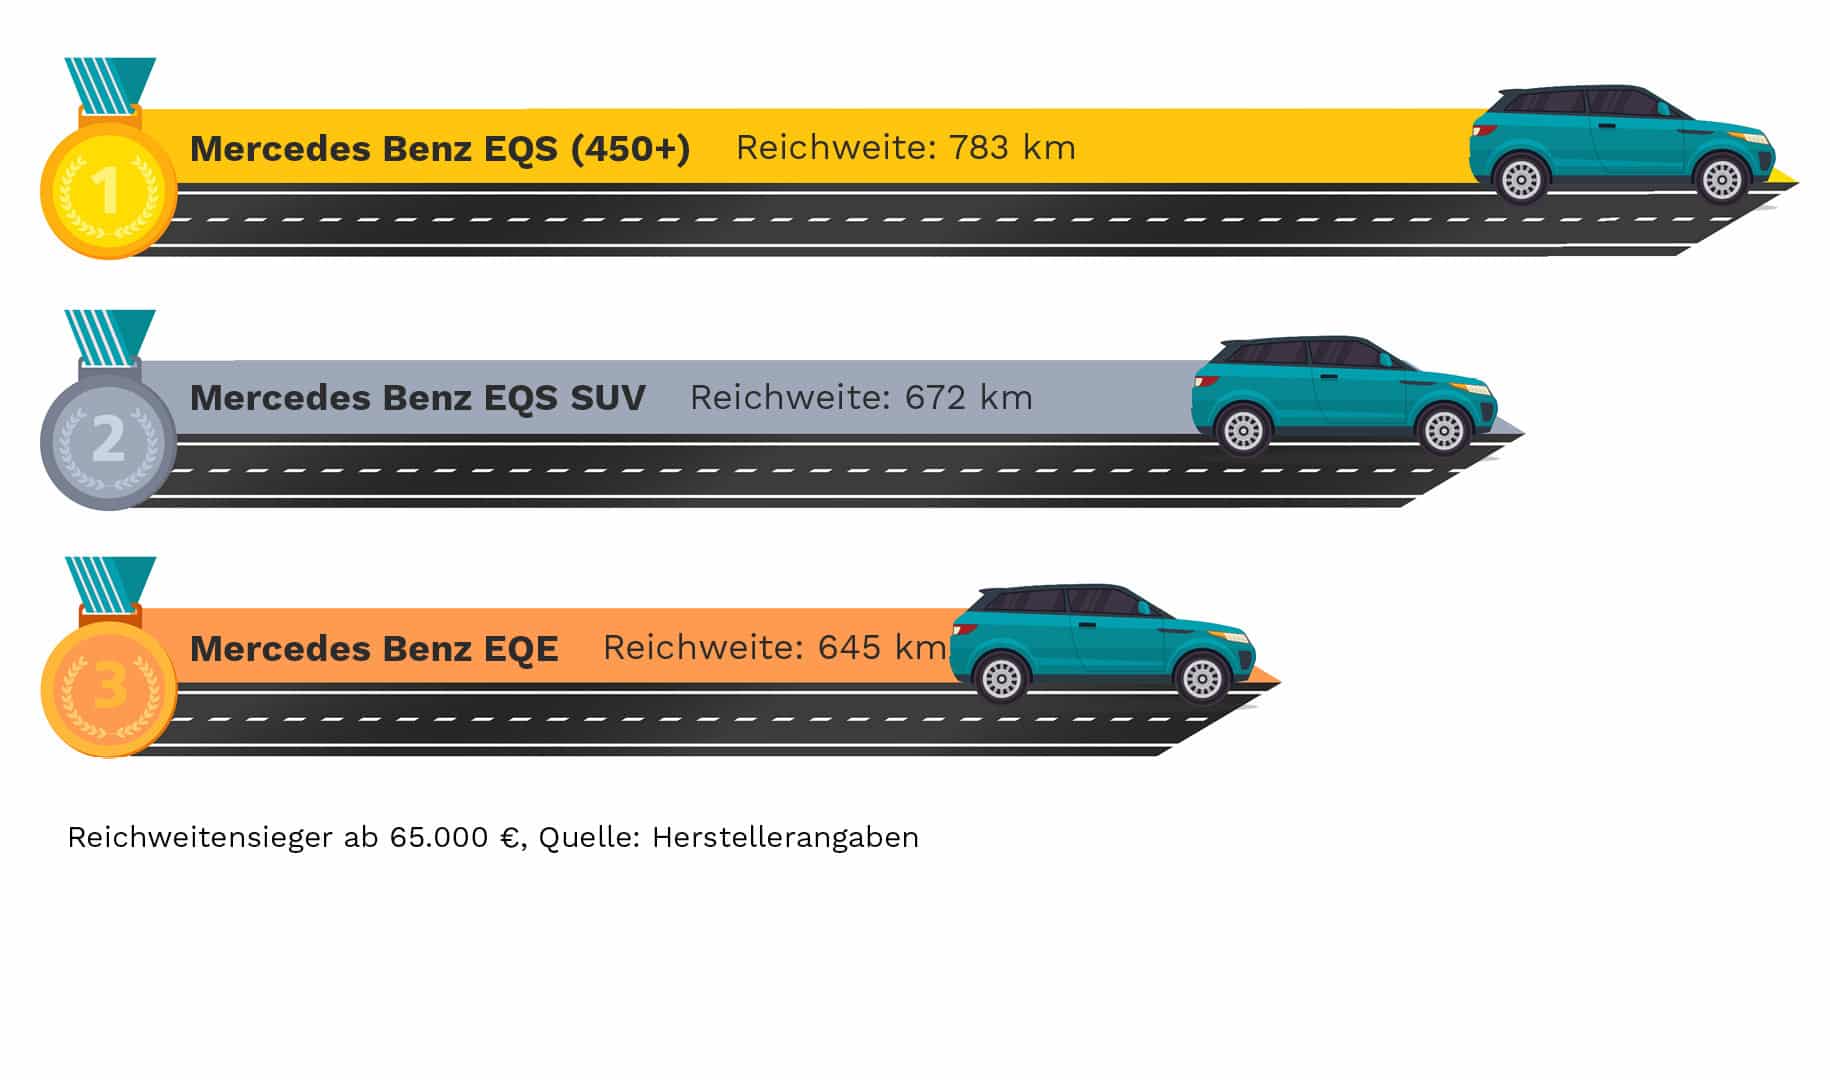 Infographic ranking e-cars range winner from €65,000